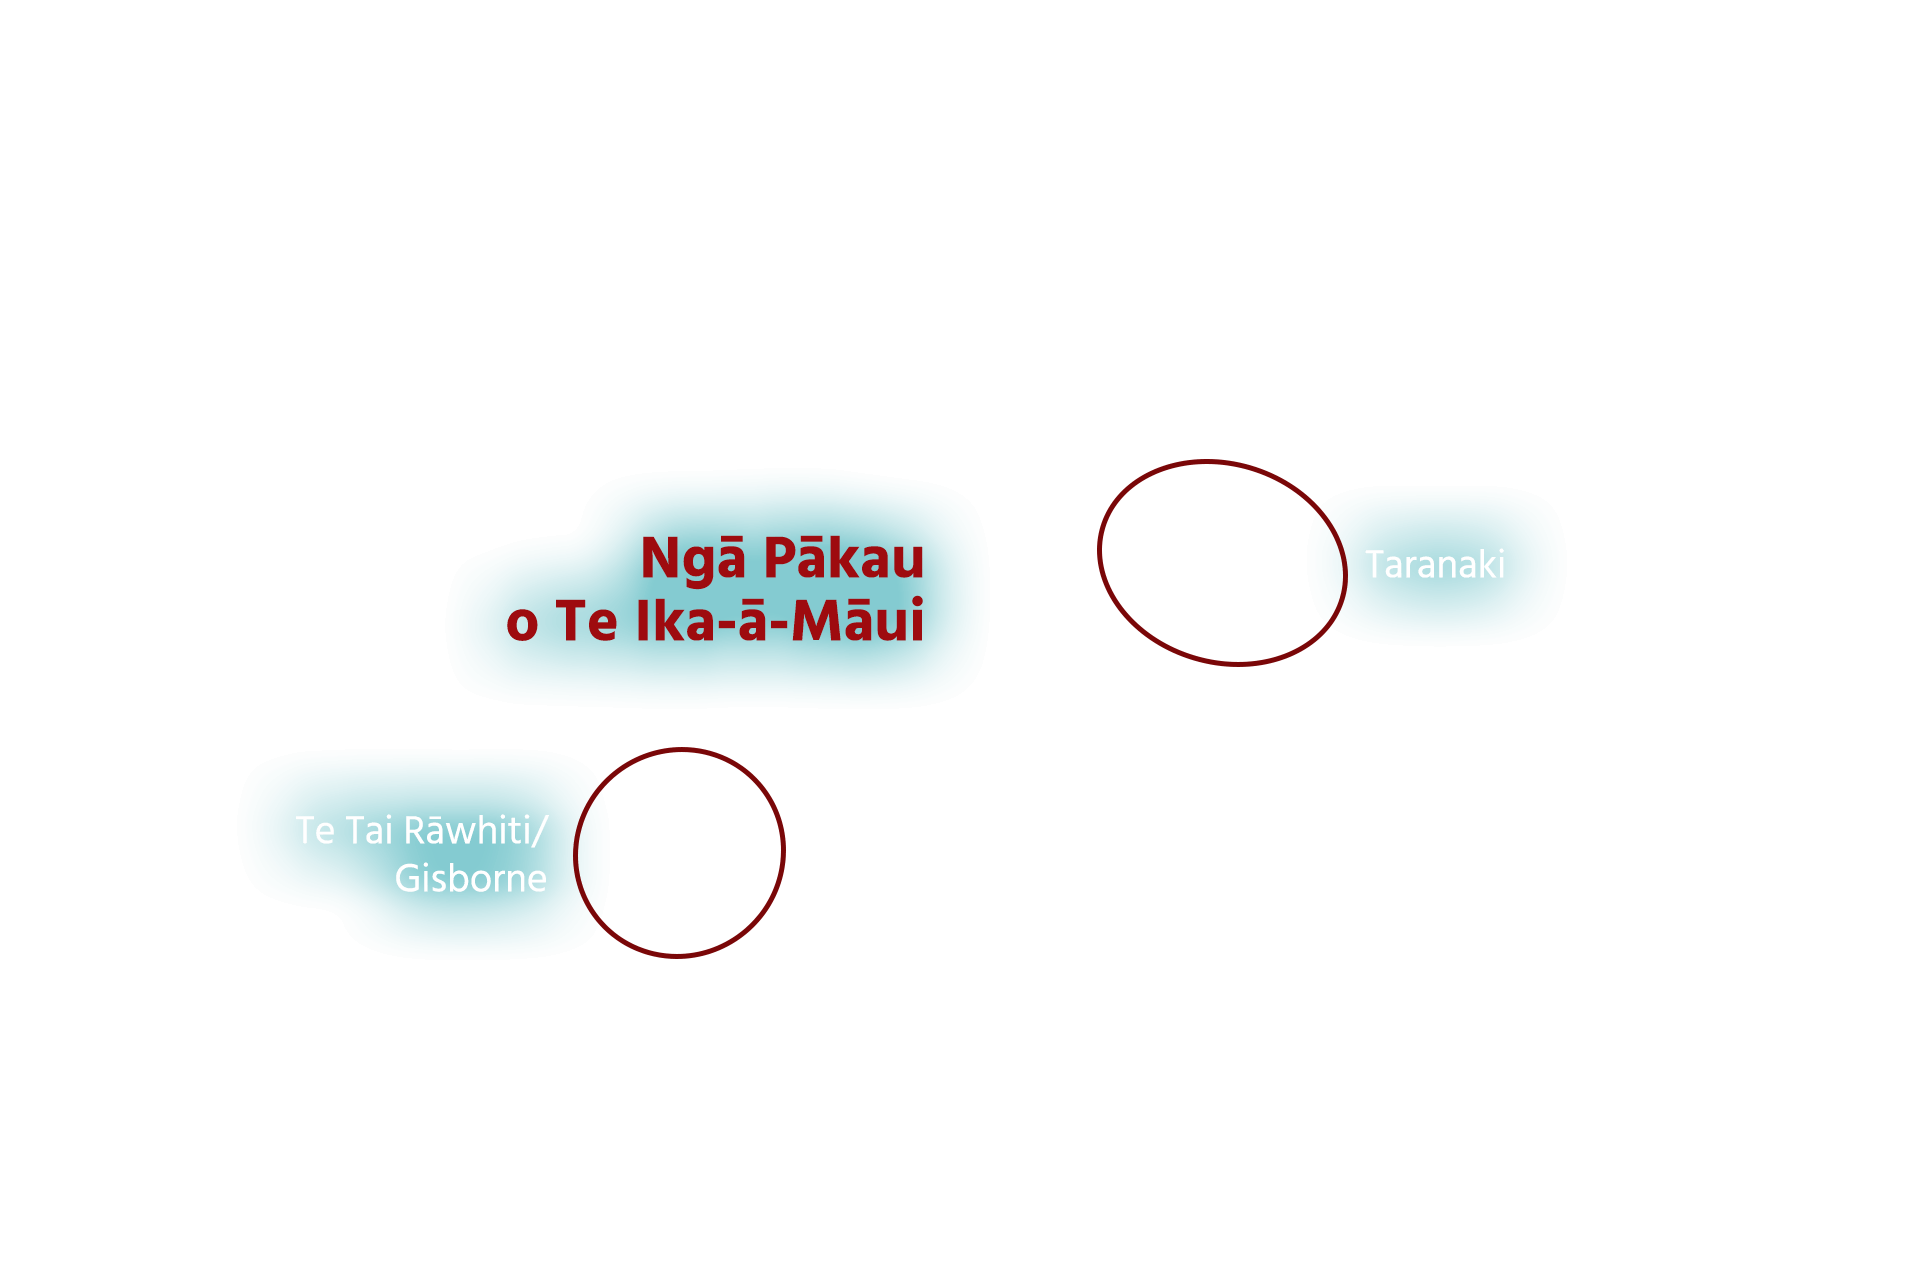 Taranaki and Te Tai Rāwhiti